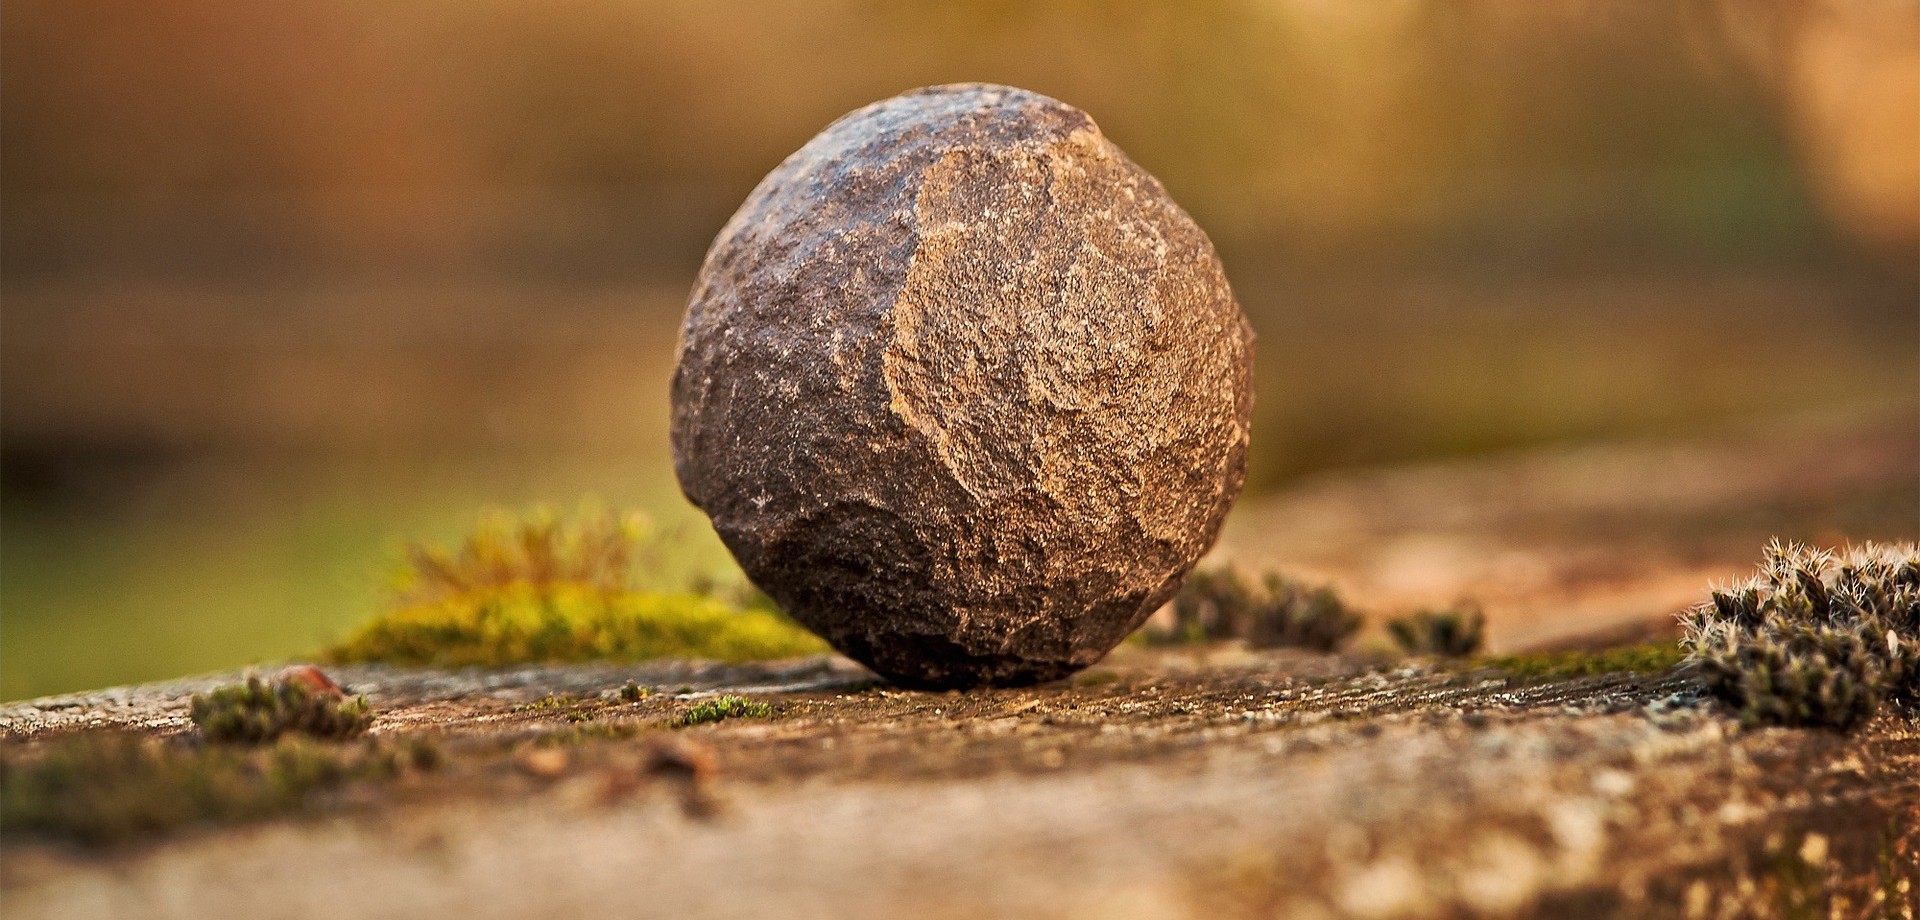 Ein großer, kugelrunder Stein mit einigen Macken liegt auf einer Steinplatte auf dem Boden